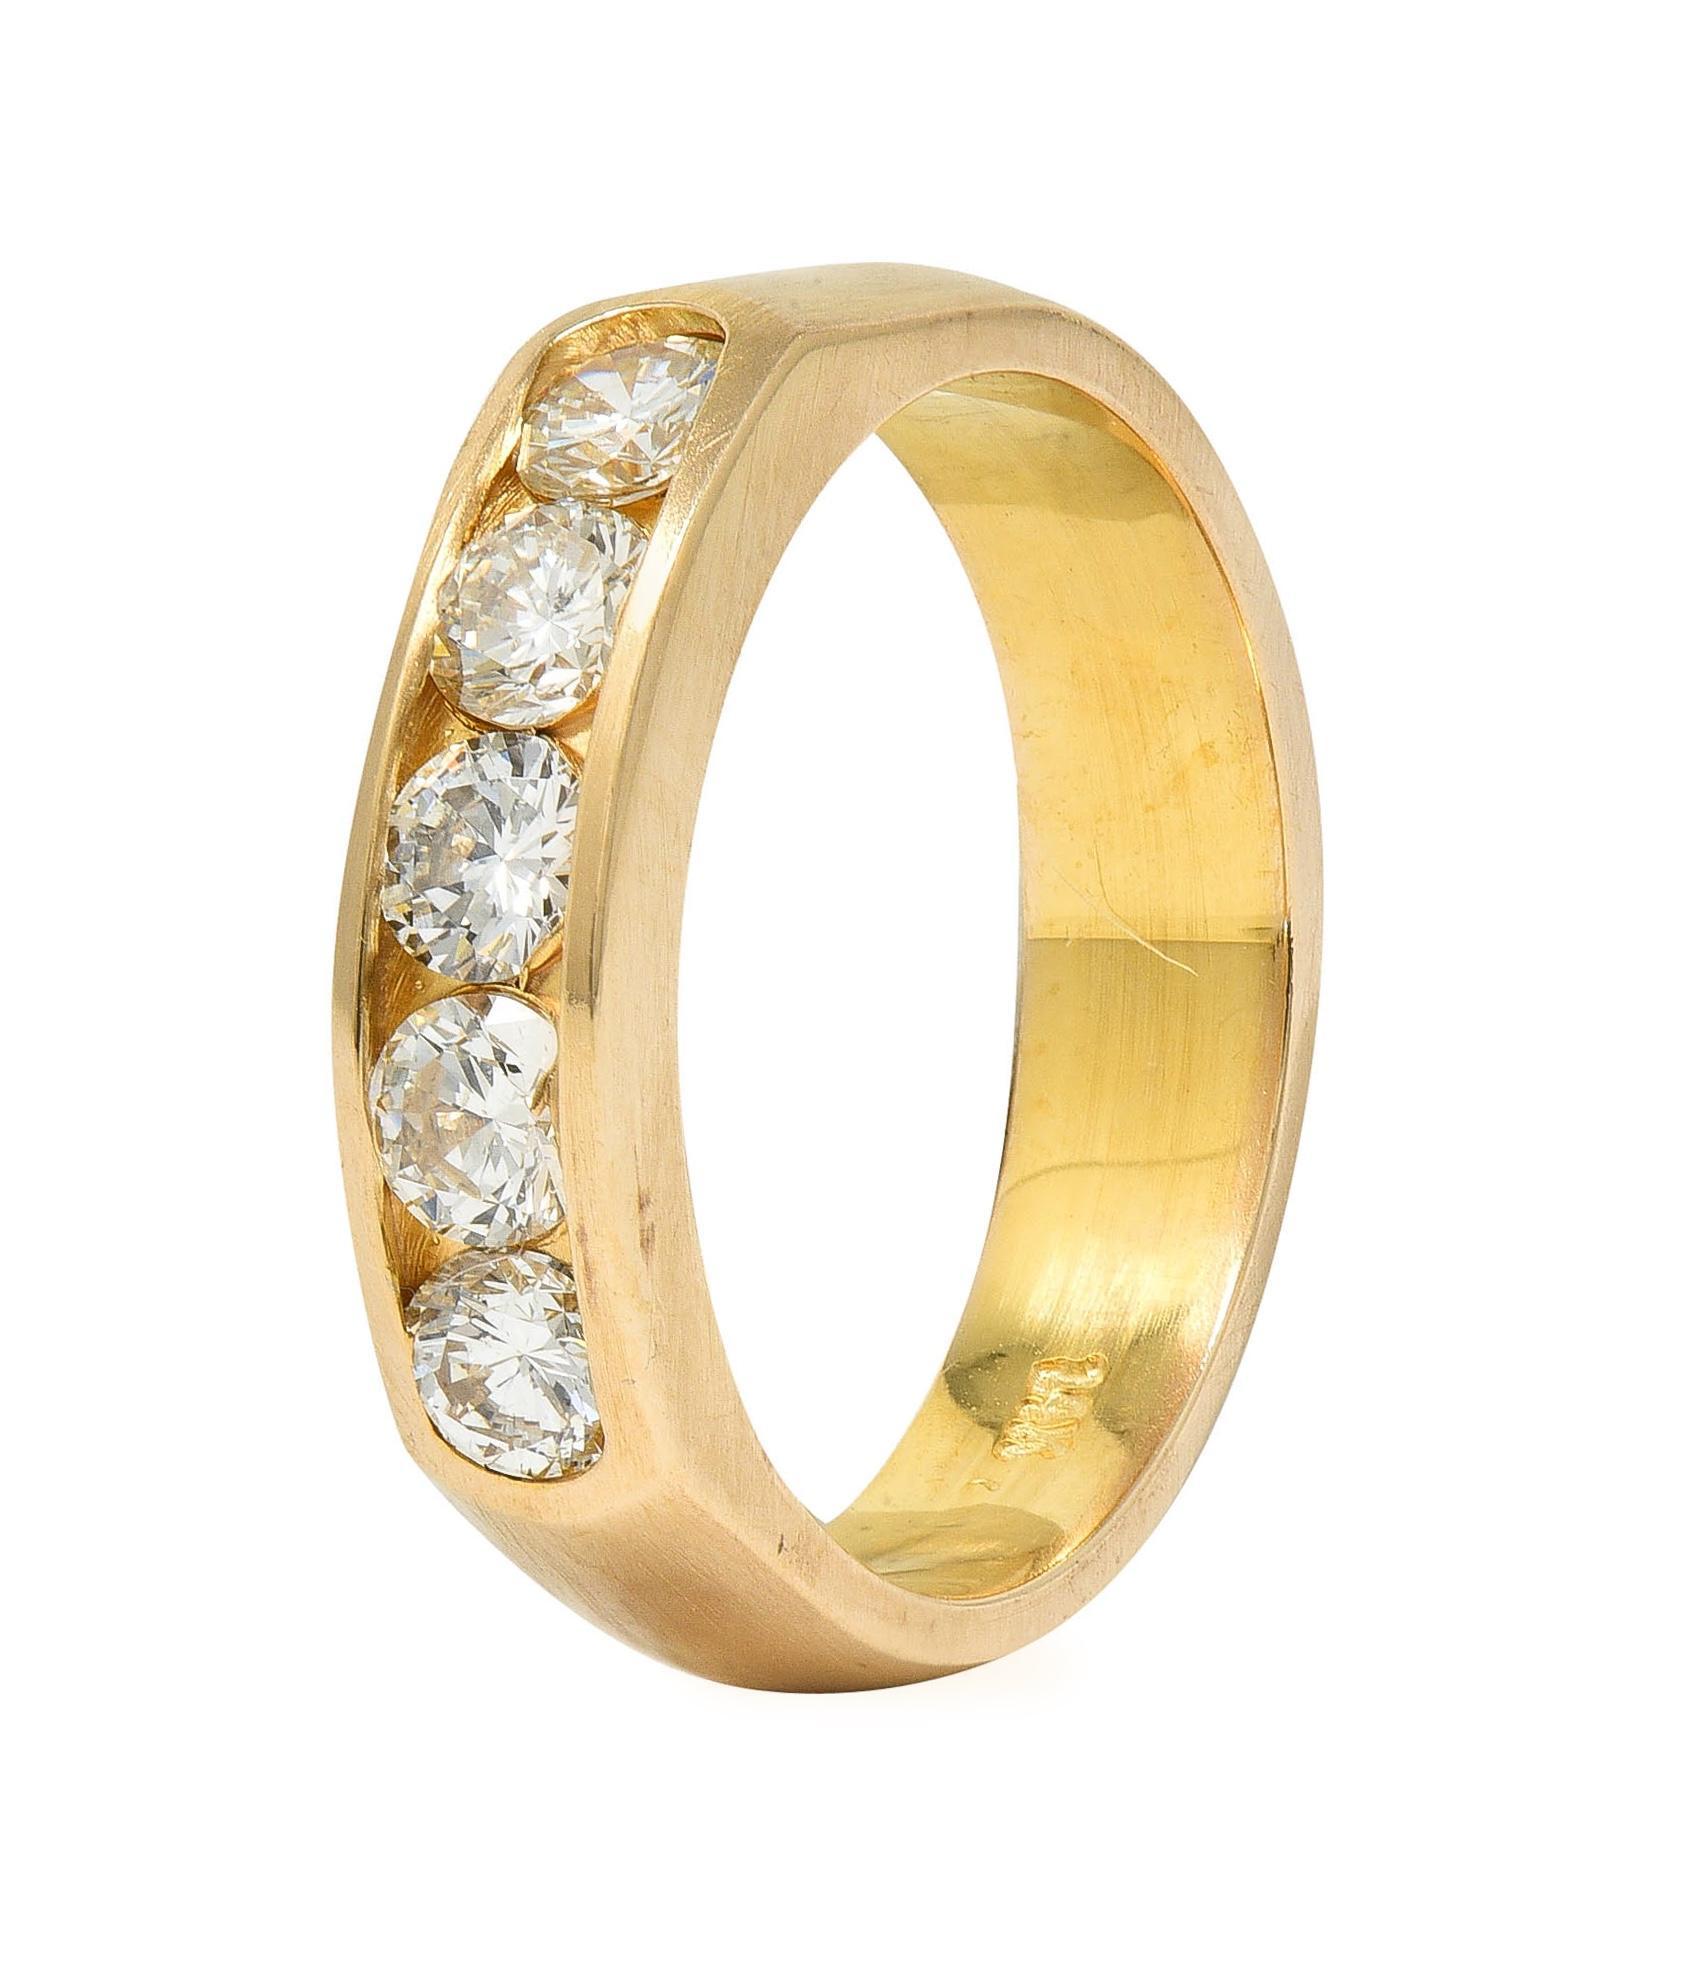 Vintage 0.80 CTW Transitional Cut Diamond 14 Karat Yellow Gold Band Ring 5